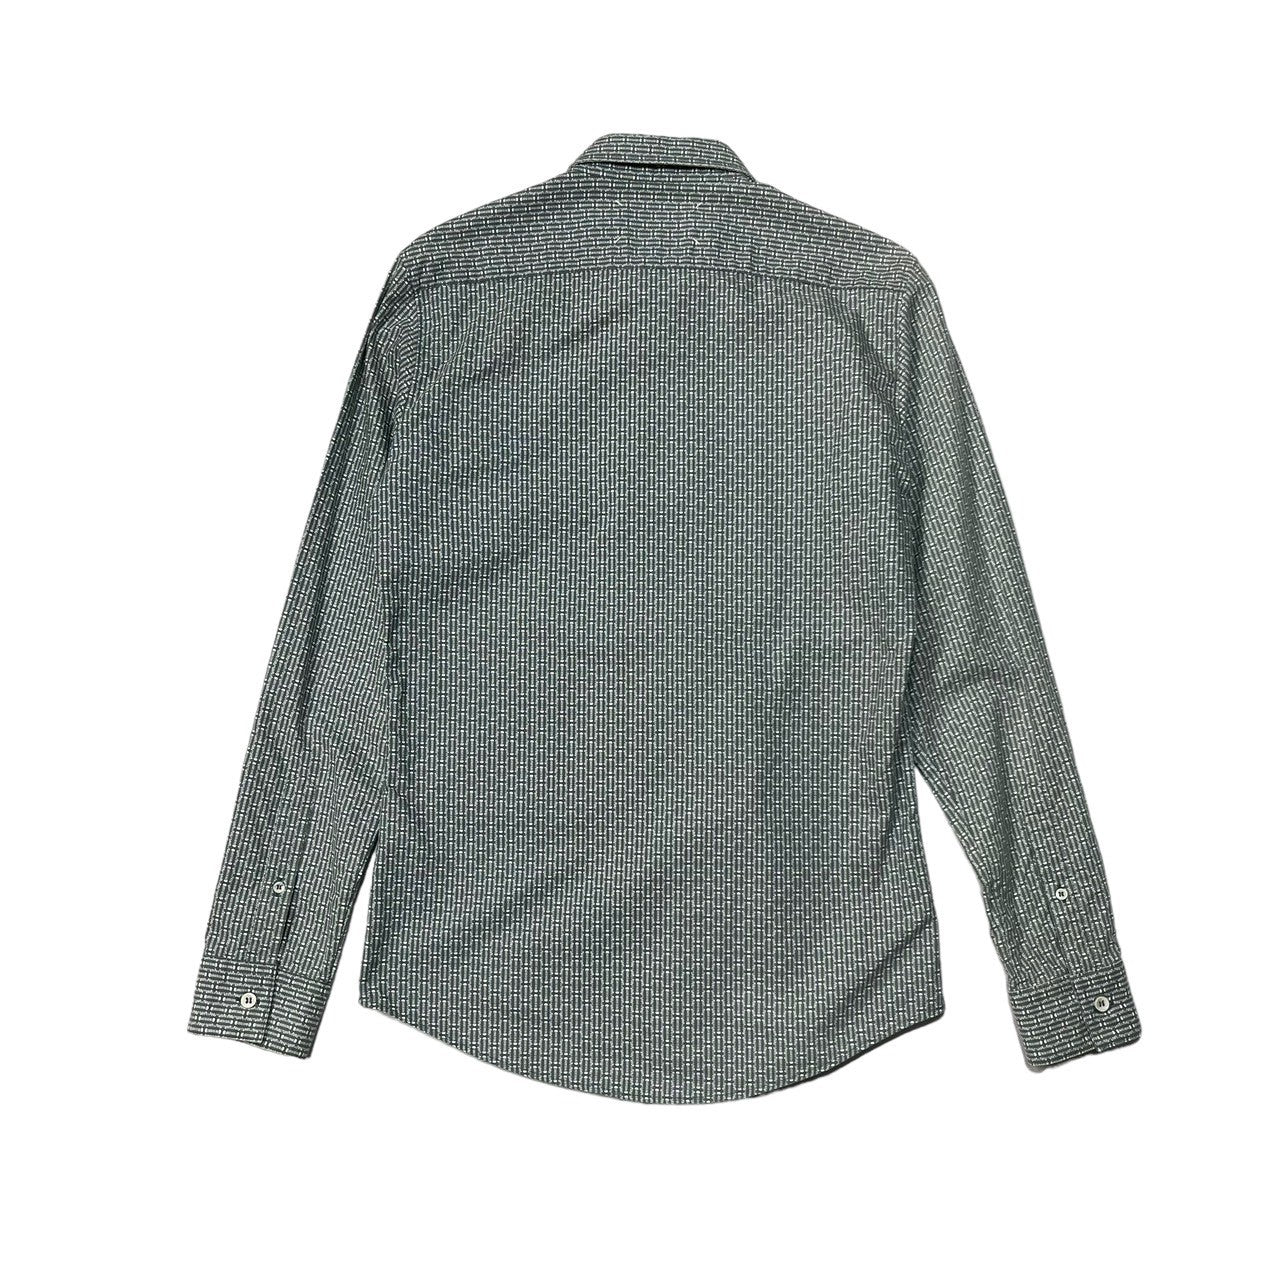 Maison Martin Margiela(メゾン マルタンマルジェラ) 13AW All-over pattern regular collar  shirt 総柄 レギュラーカラー シャツ S30DL0244 44(S程度) グリーン×ホワイト